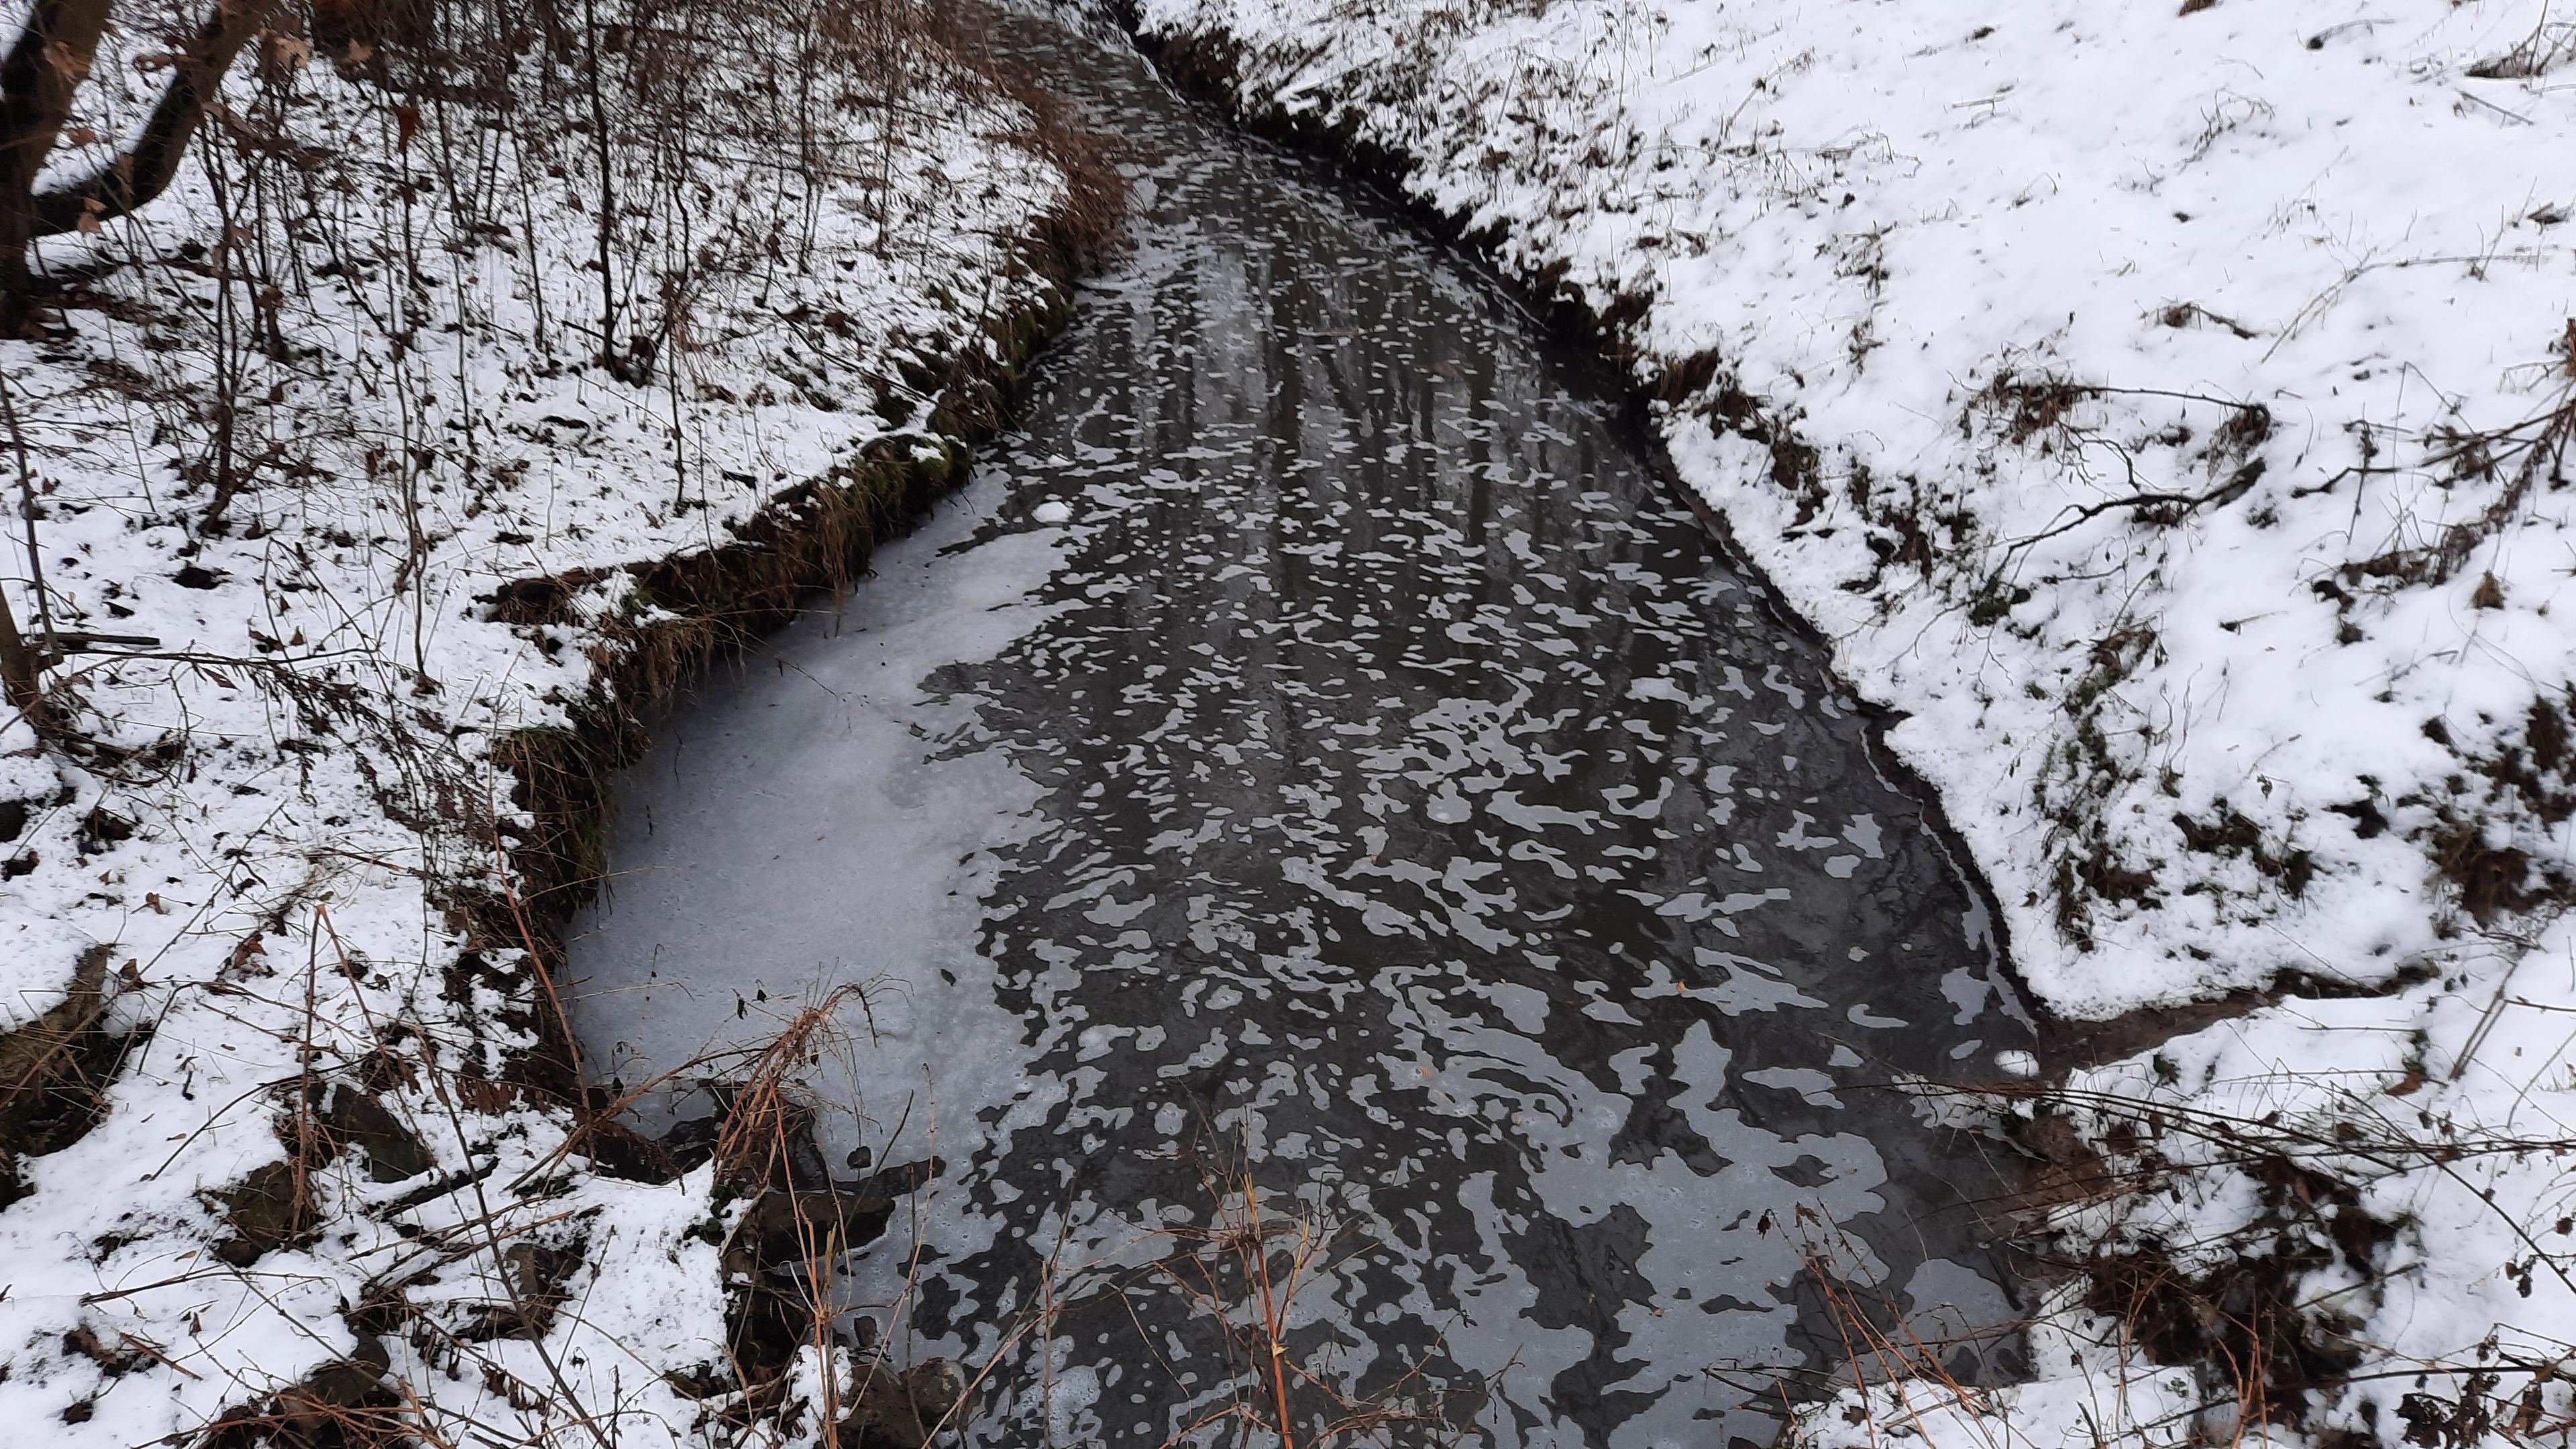 zanieczyszcony potok, brzegi pokryte sniegiem